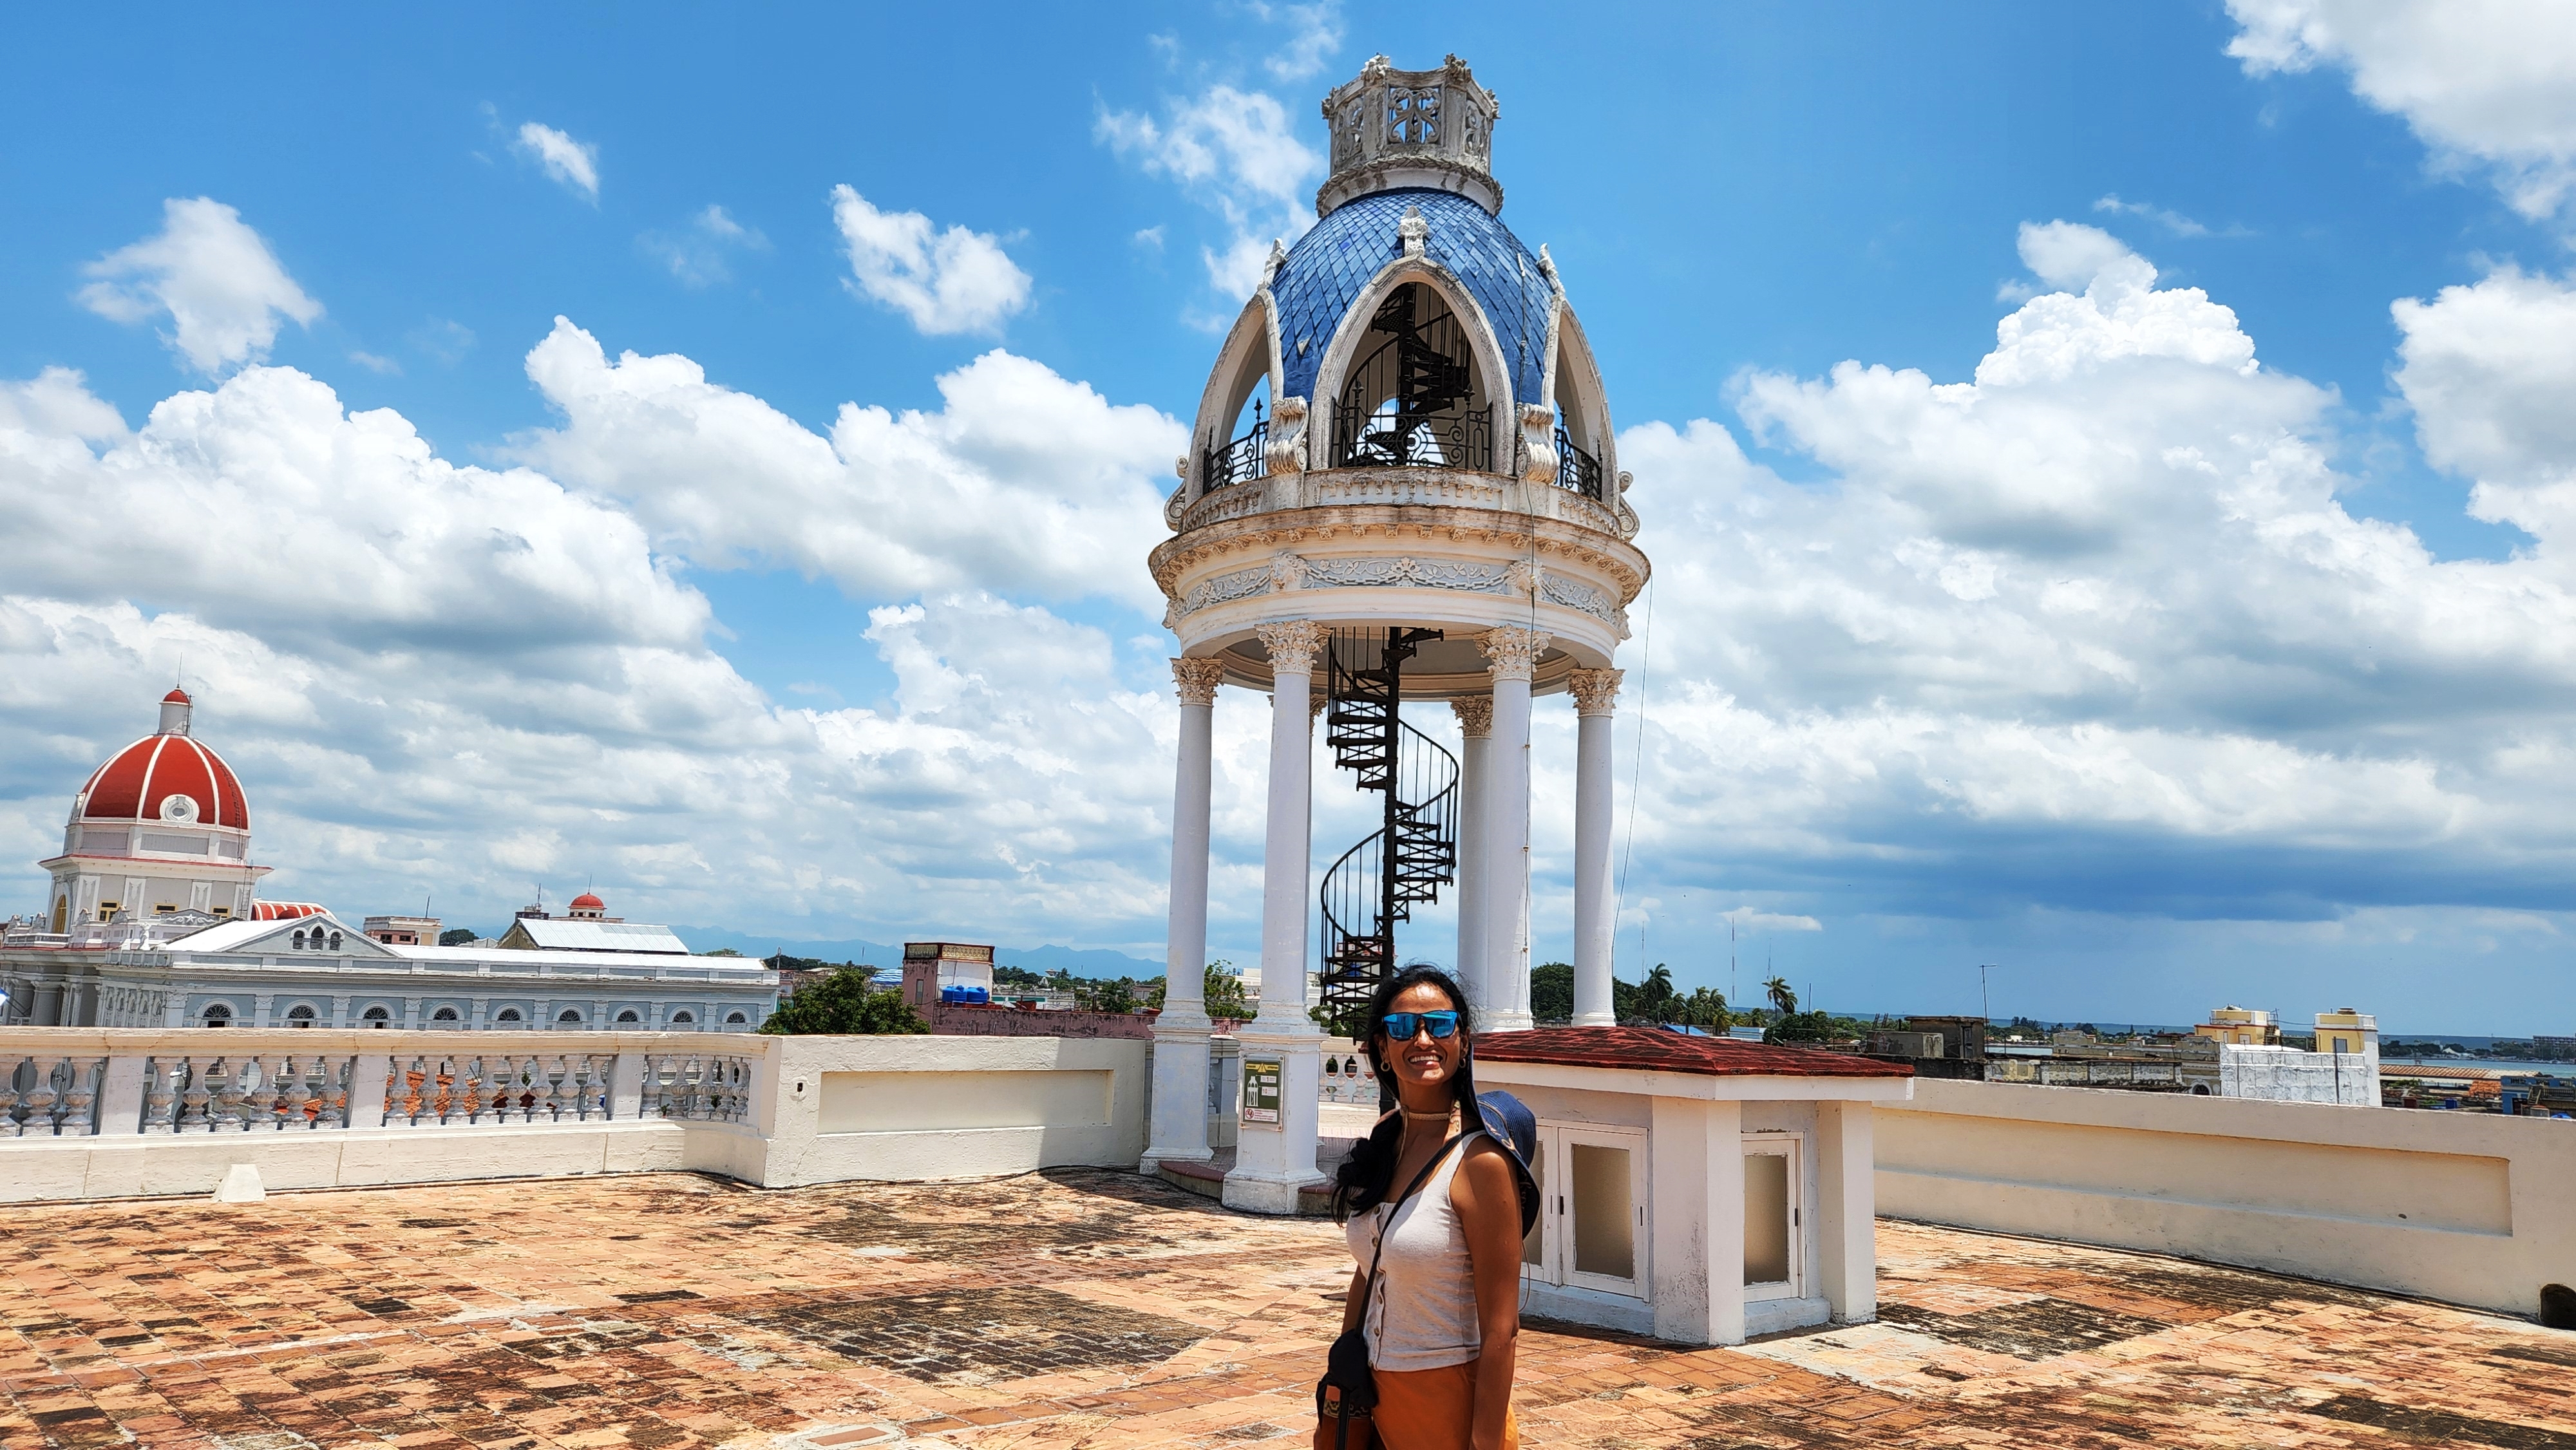 Cienfuegos, Cuba was totally different than Trinidad